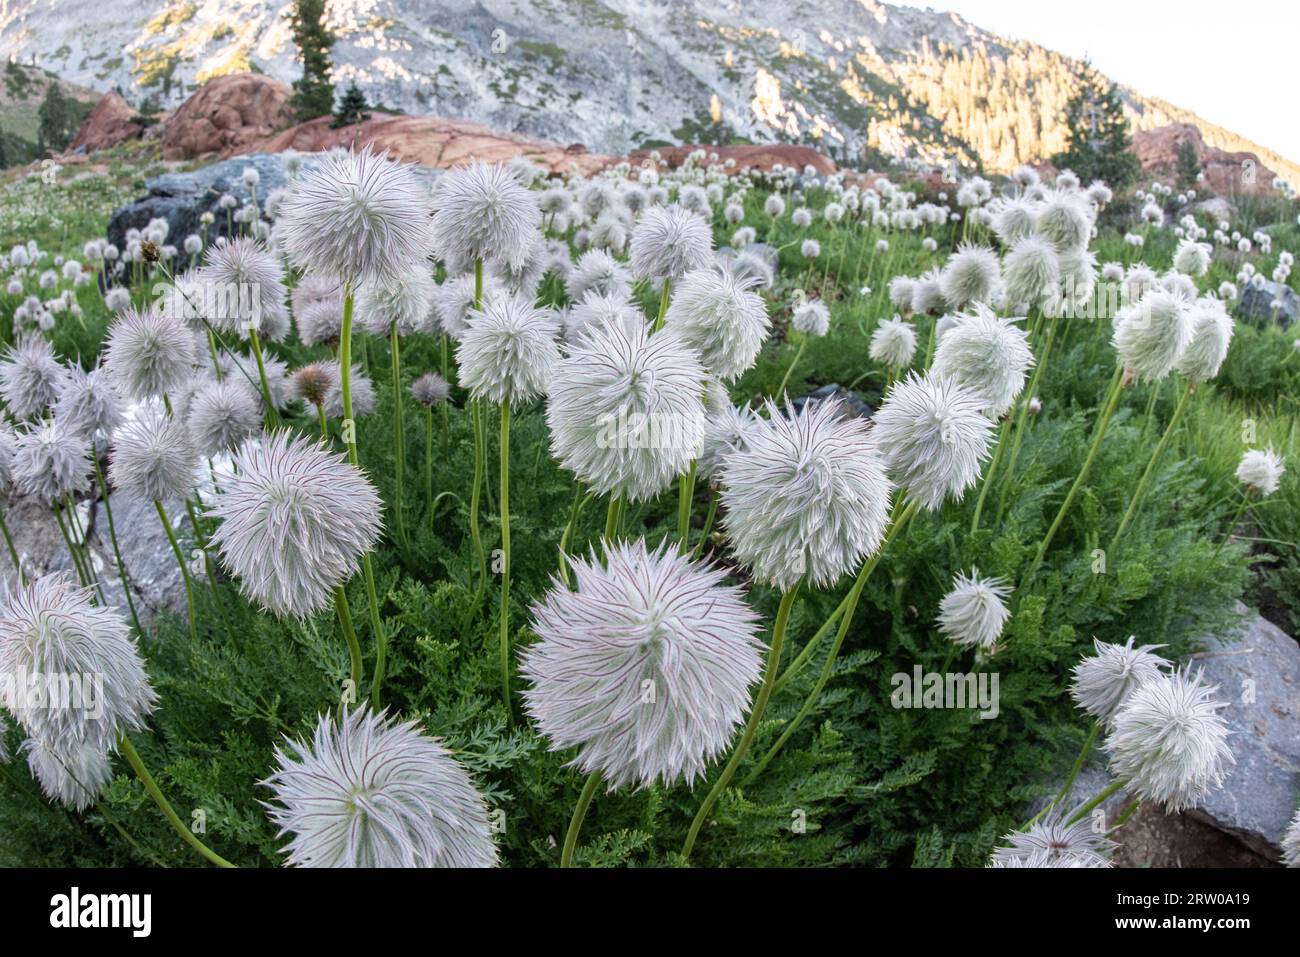 Insoliti e graziosi fiori di pasqueflower bianchi o occidentali (Anemone (Pulsalitta) occidentalis) che crescono nelle montagne delle trinity alps in California, USA. Foto Stock